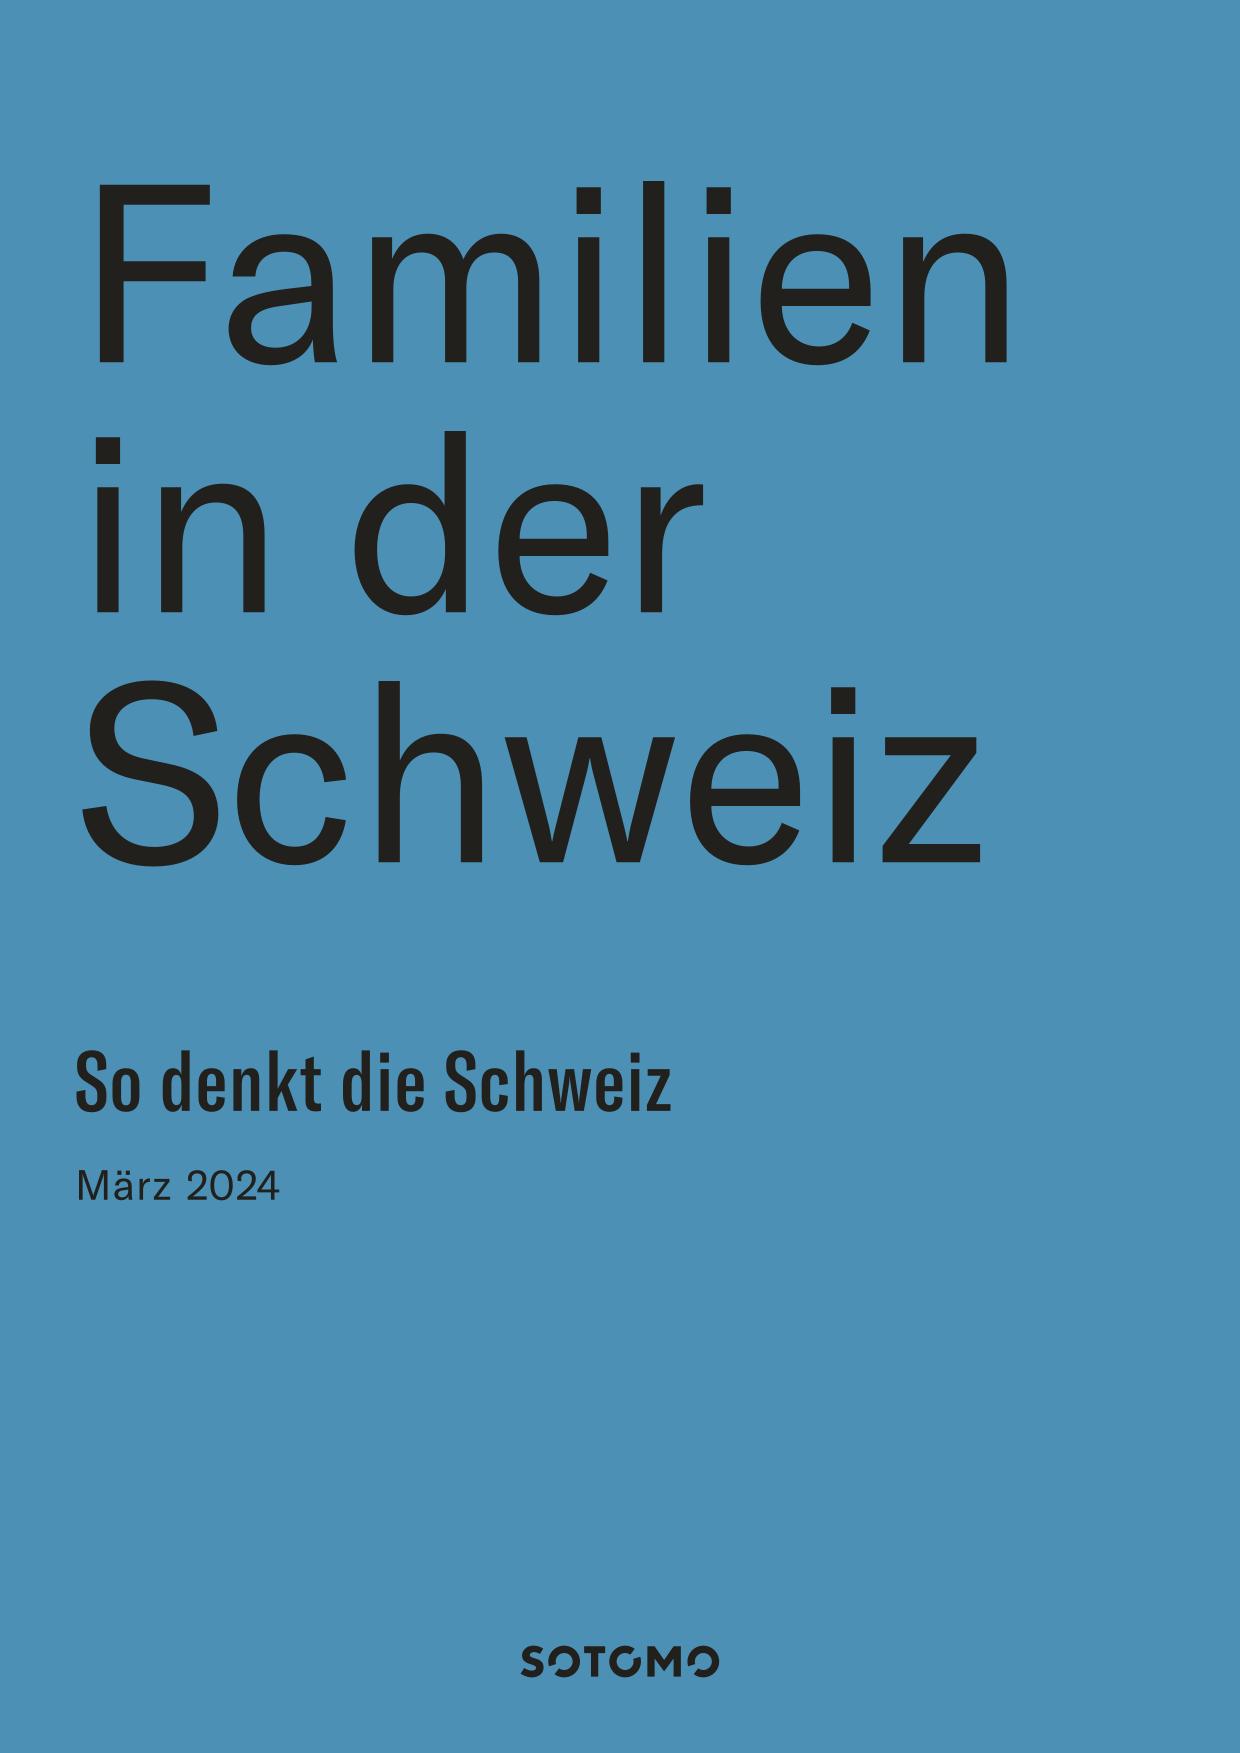 Familien in der Schweiz 2024 Sotomo 01